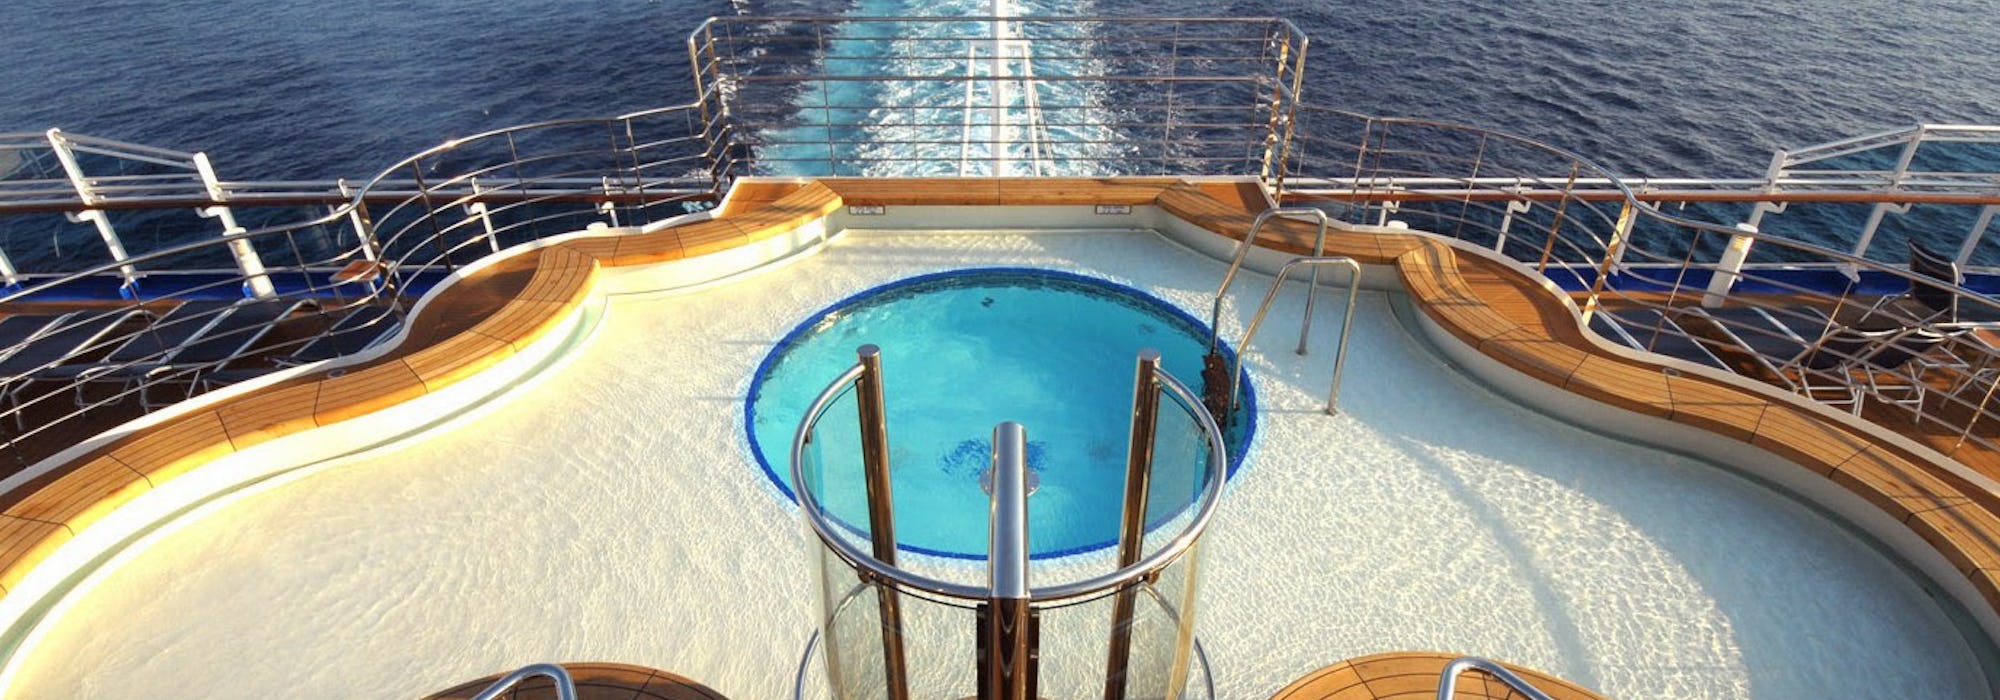 Bild från ovan på aktern på fartyget Regal Princess med dess pool i fokus.